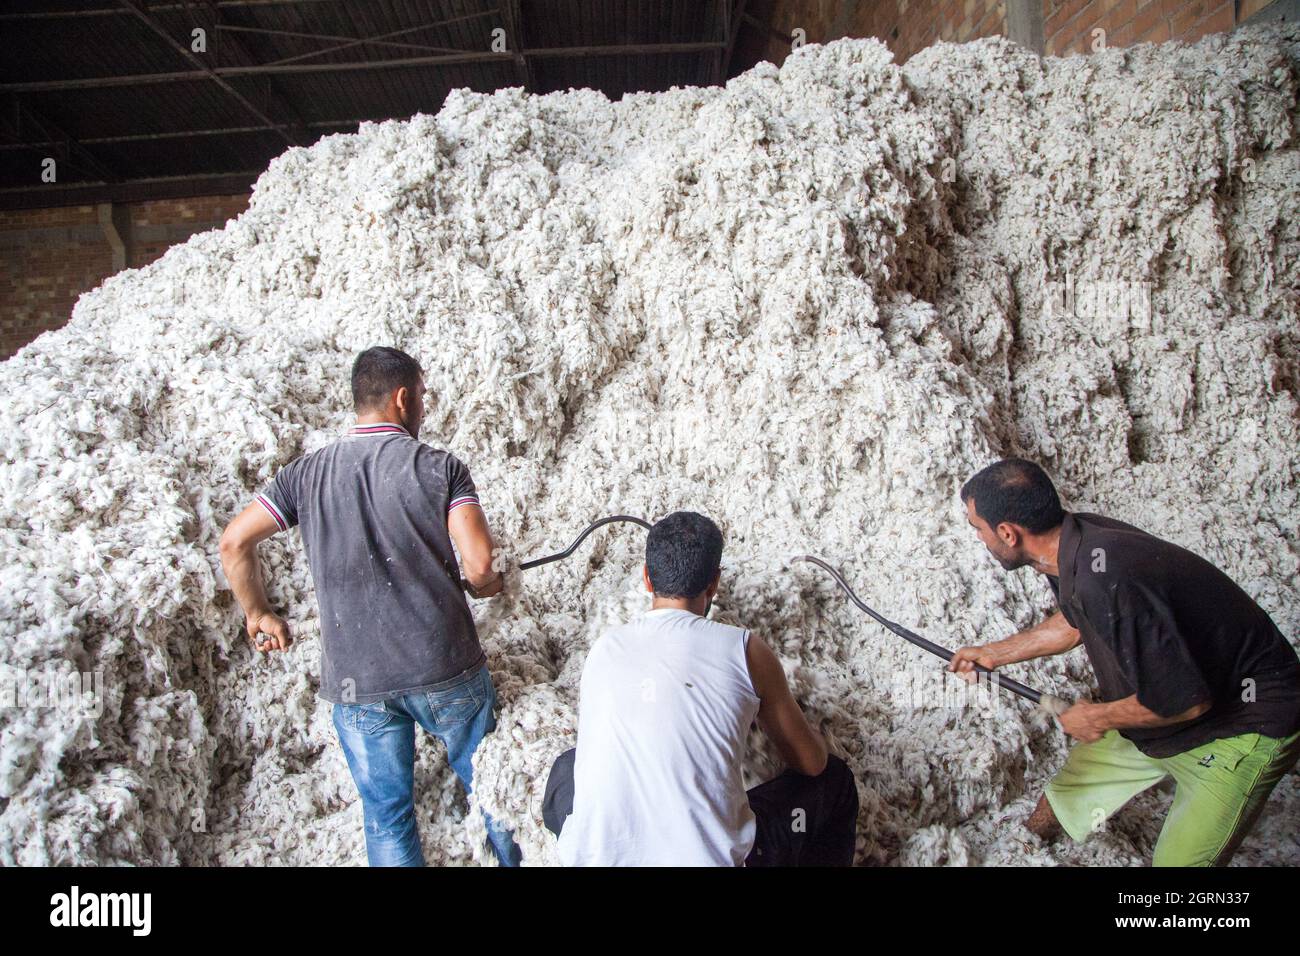 Adana/Turkey-09/27/2014:gli operai non identificati raccolgono il batuffolo di cotone per il processo di sgranatura ad un gin di cotone. Foto Stock